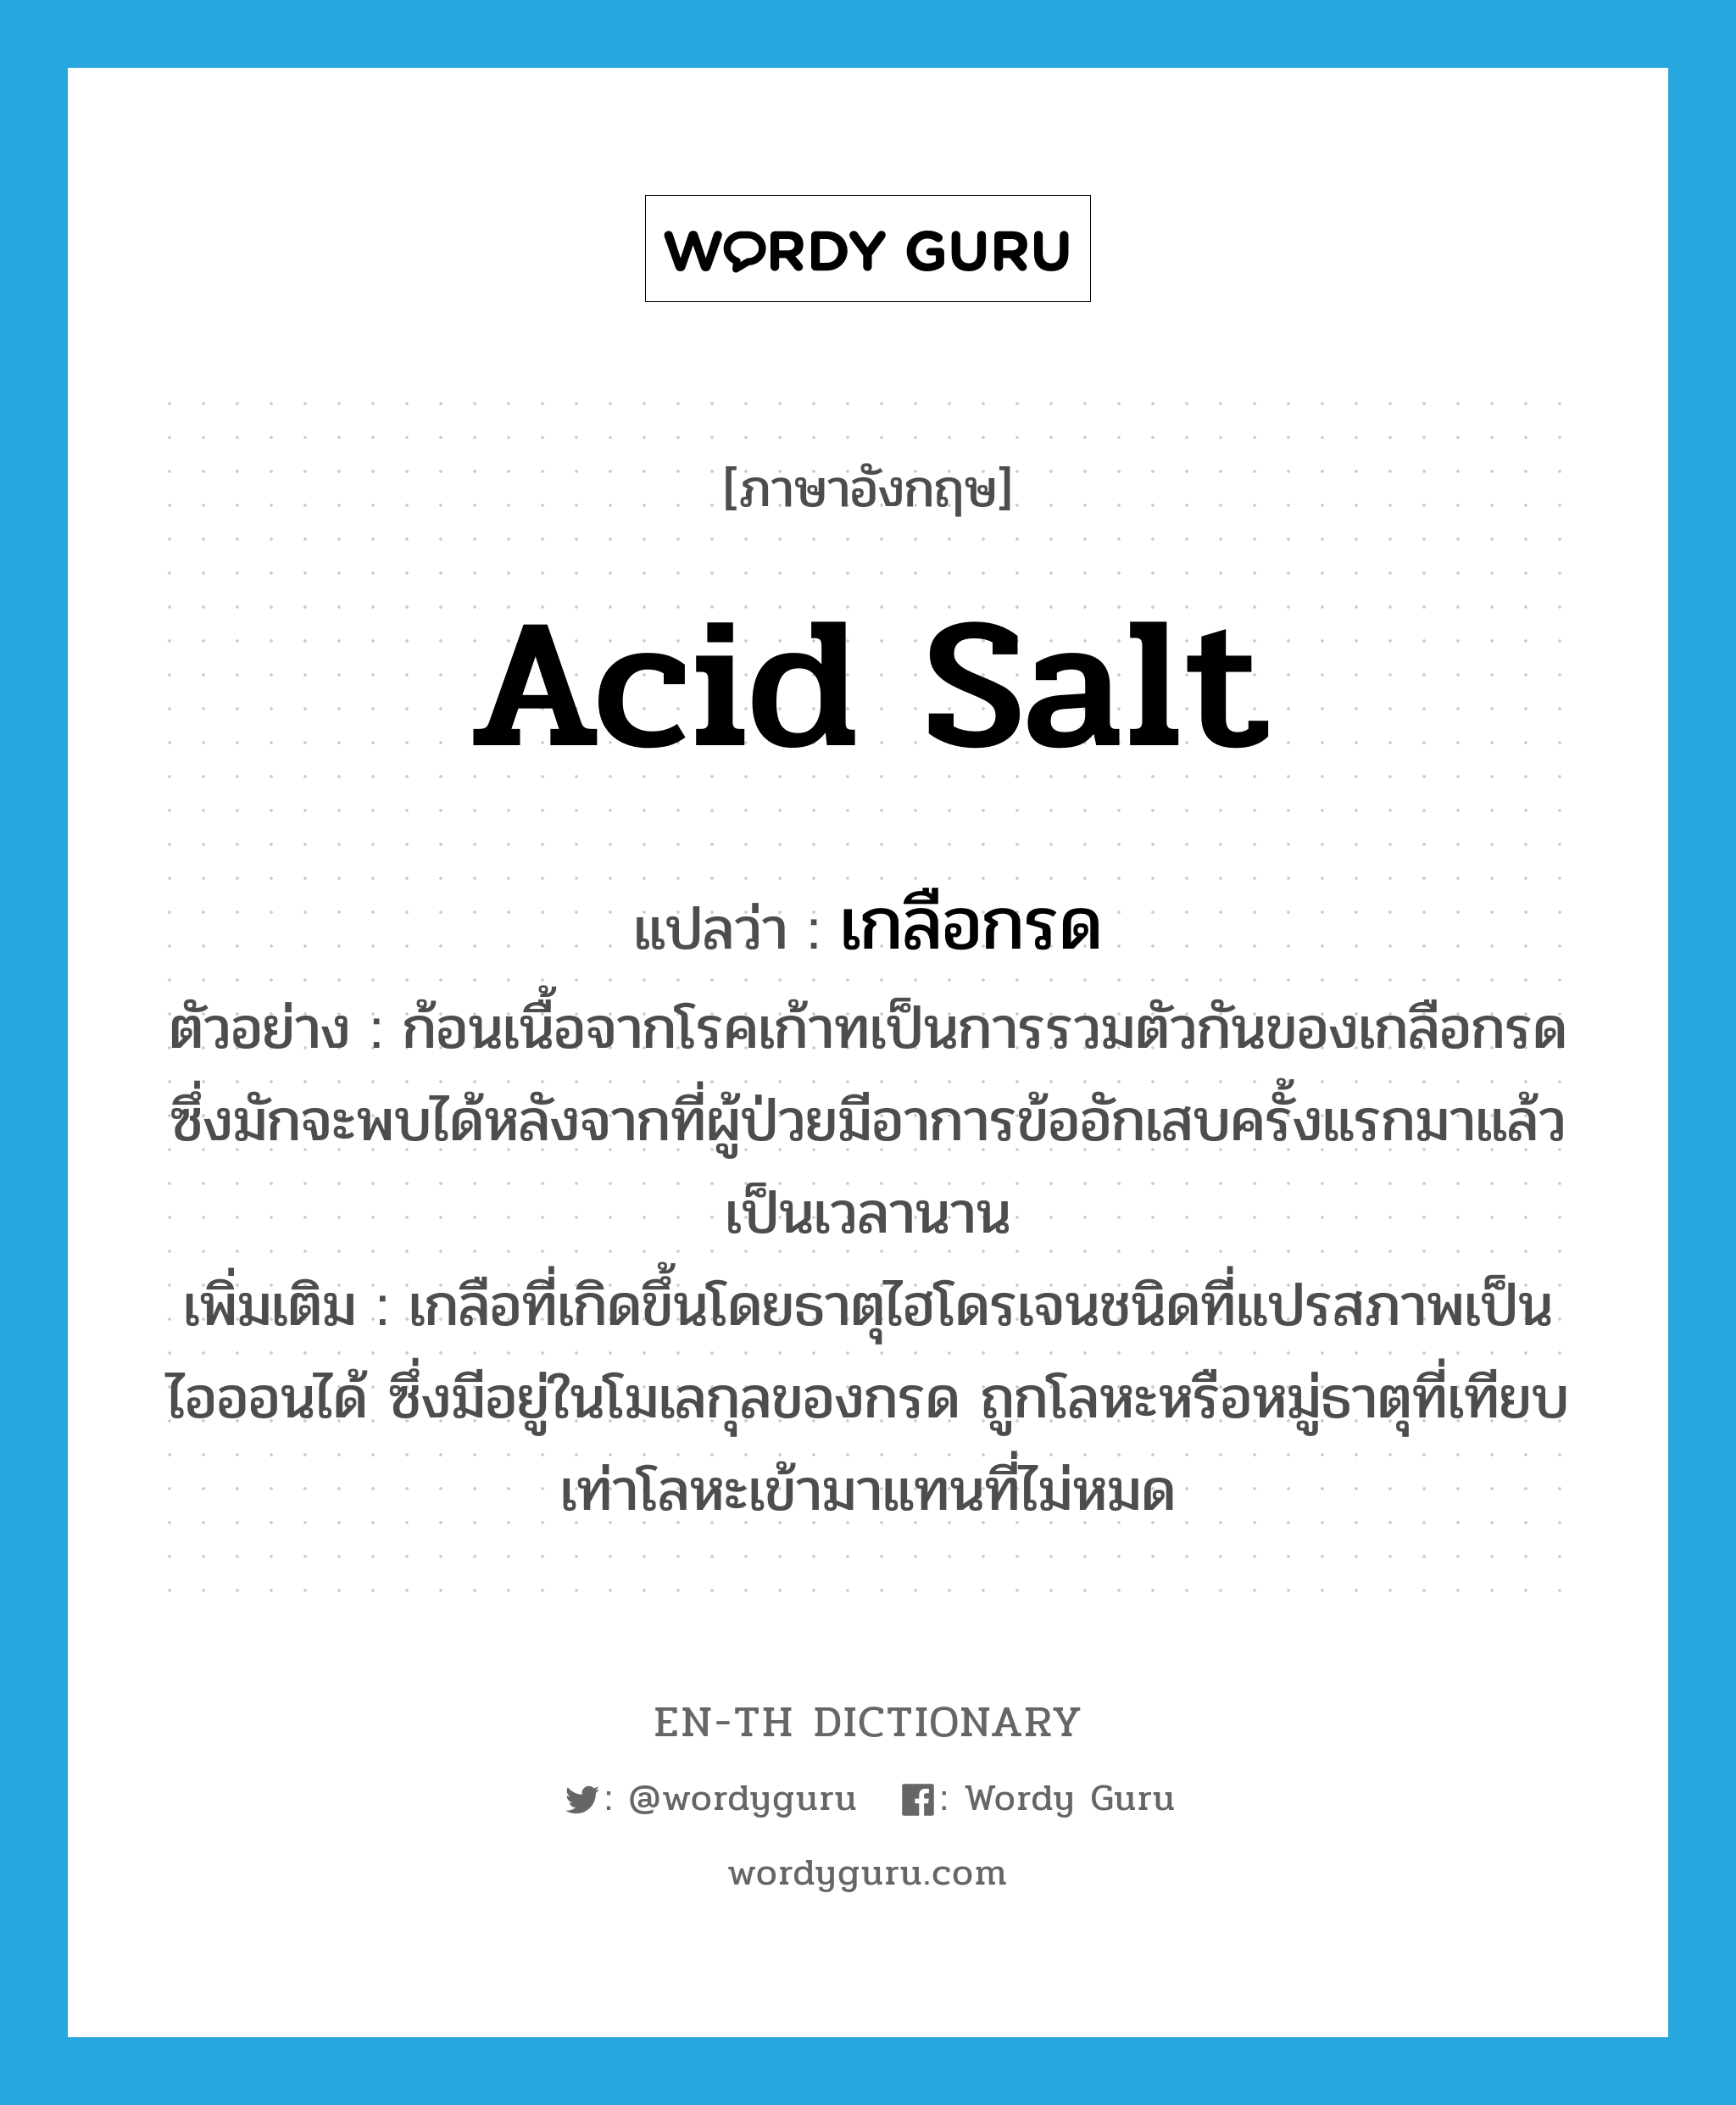 acid salt แปลว่า?, คำศัพท์ภาษาอังกฤษ acid salt แปลว่า เกลือกรด ประเภท N ตัวอย่าง ก้อนเนื้อจากโรคเก้าทเป็นการรวมตัวกันของเกลือกรดซึ่งมักจะพบได้หลังจากที่ผู้ป่วยมีอาการข้ออักเสบครั้งแรกมาแล้วเป็นเวลานาน เพิ่มเติม เกลือที่เกิดขึ้นโดยธาตุไฮโดรเจนชนิดที่แปรสภาพเป็นไอออนได้ ซึ่งมีอยู่ในโมเลกุลของกรด ถูกโลหะหรือหมู่ธาตุที่เทียบเท่าโลหะเข้ามาแทนที่ไม่หมด หมวด N